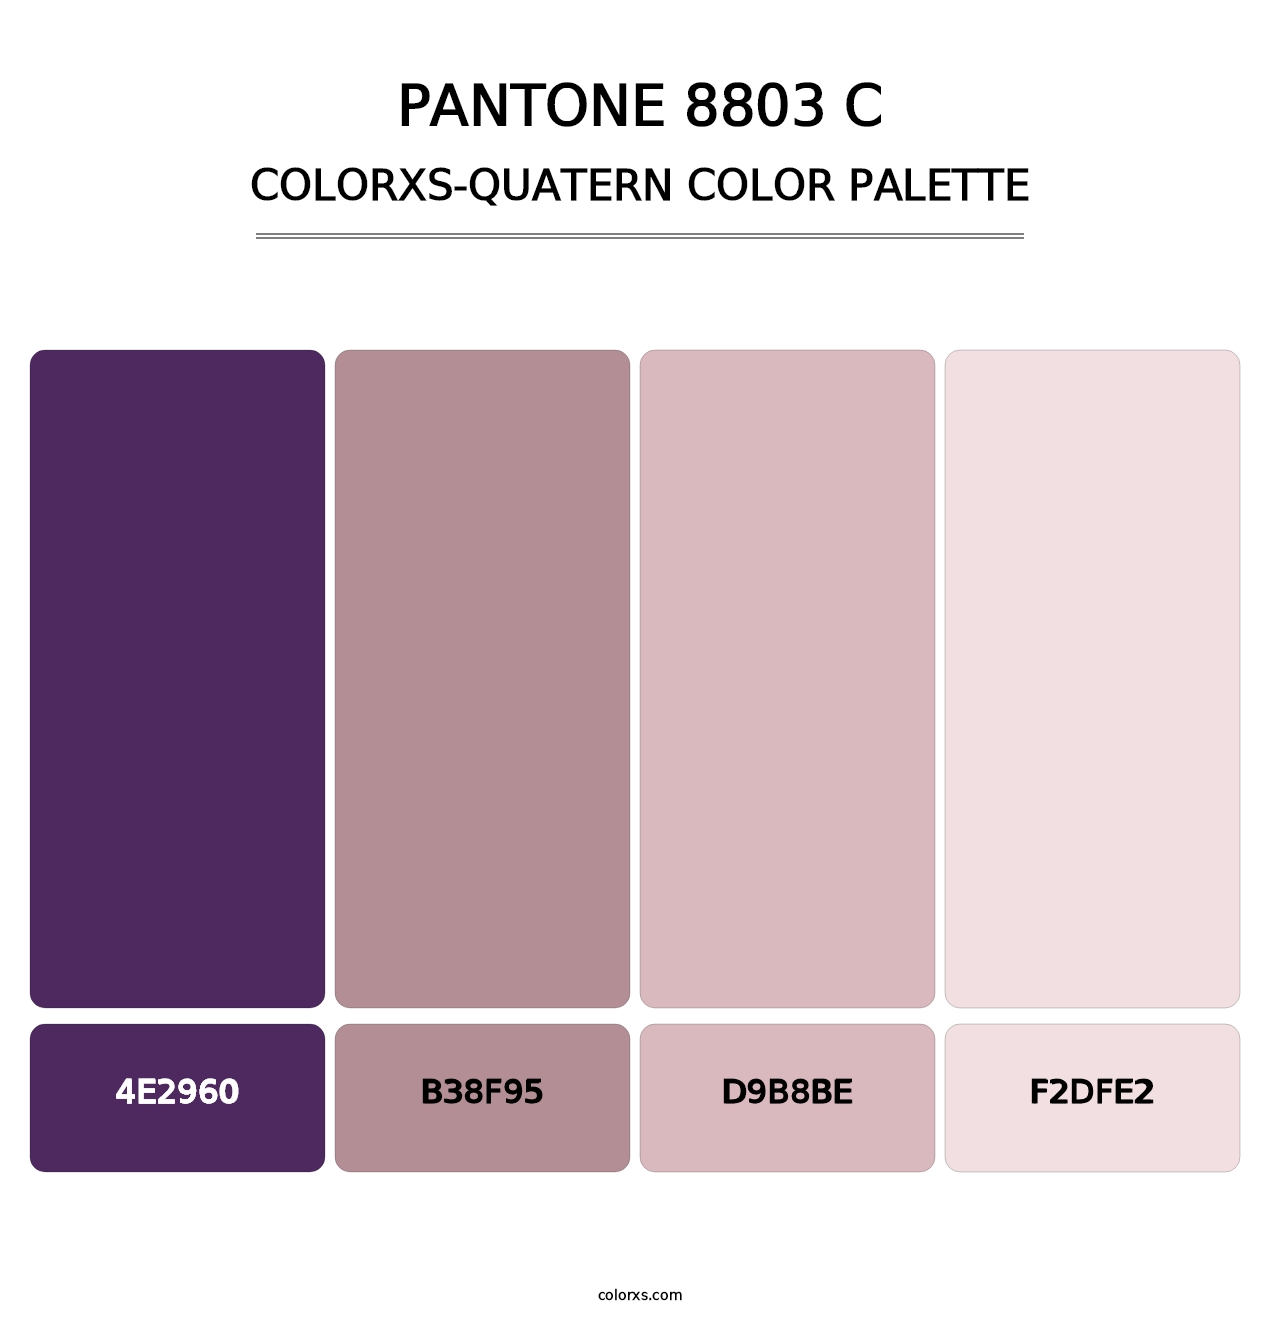 PANTONE 8803 C - Colorxs Quatern Palette